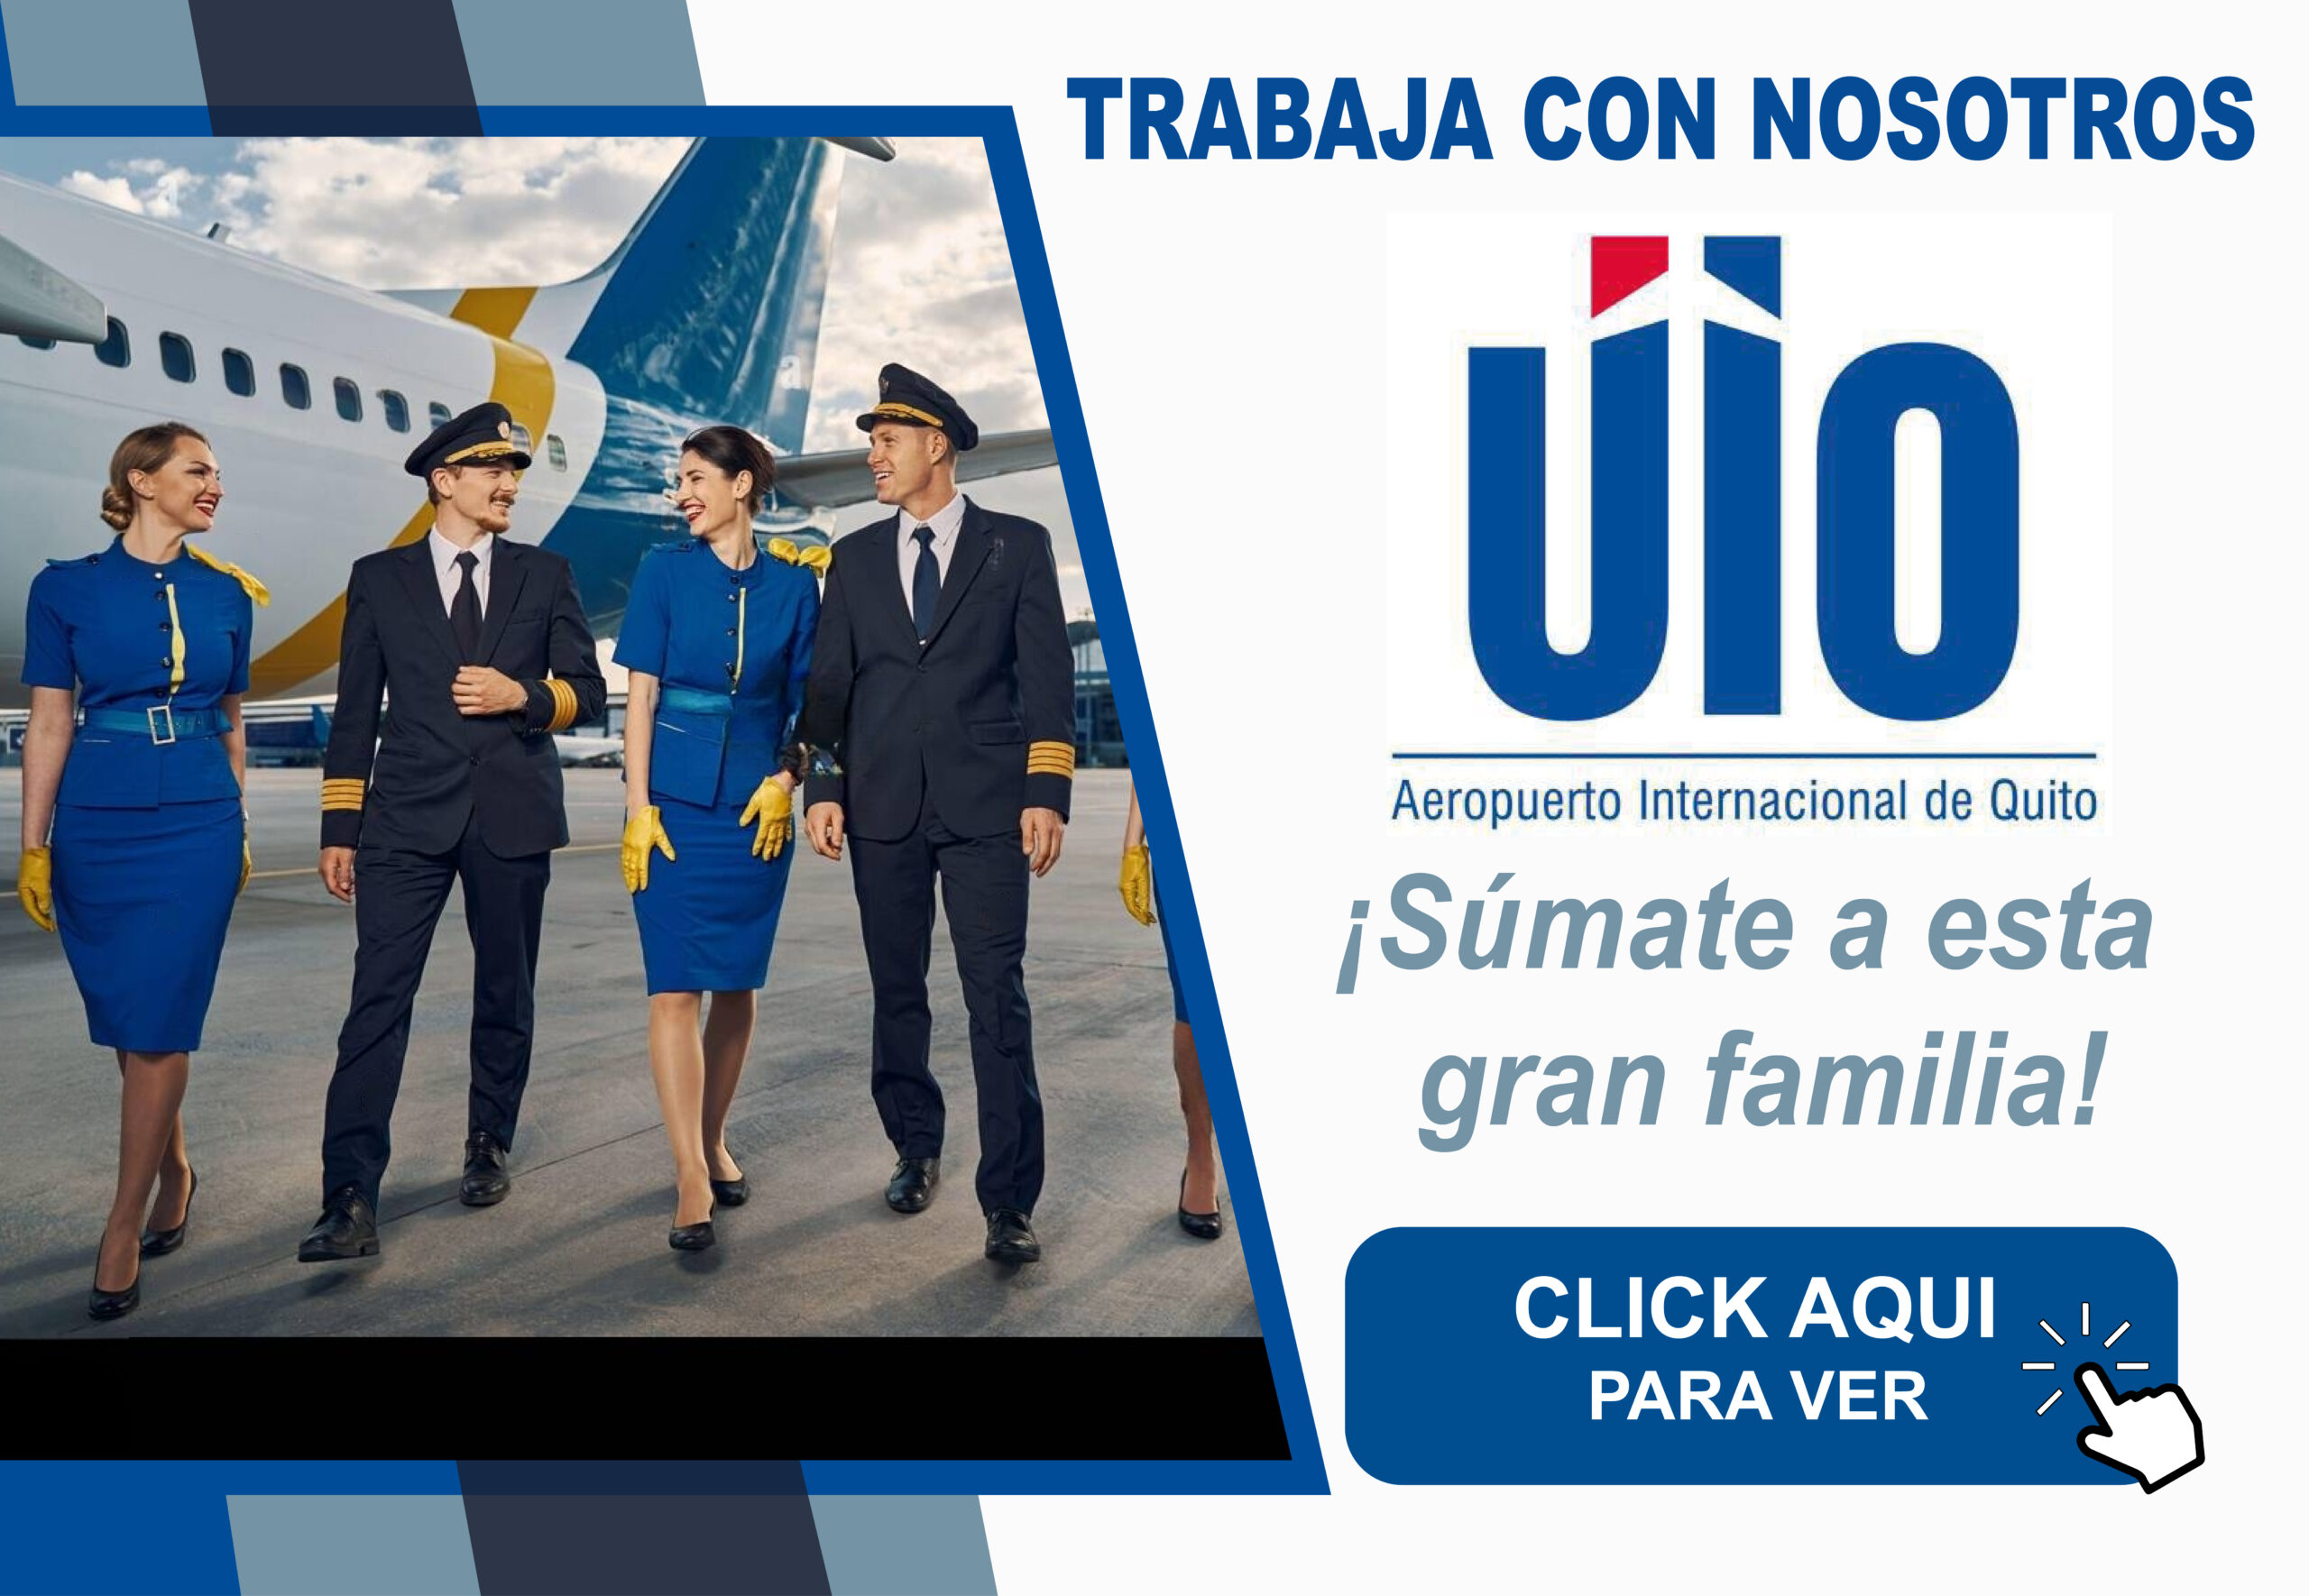 Nueva Oportunidad Laboral en el Aeropuerto Internacional de Quito